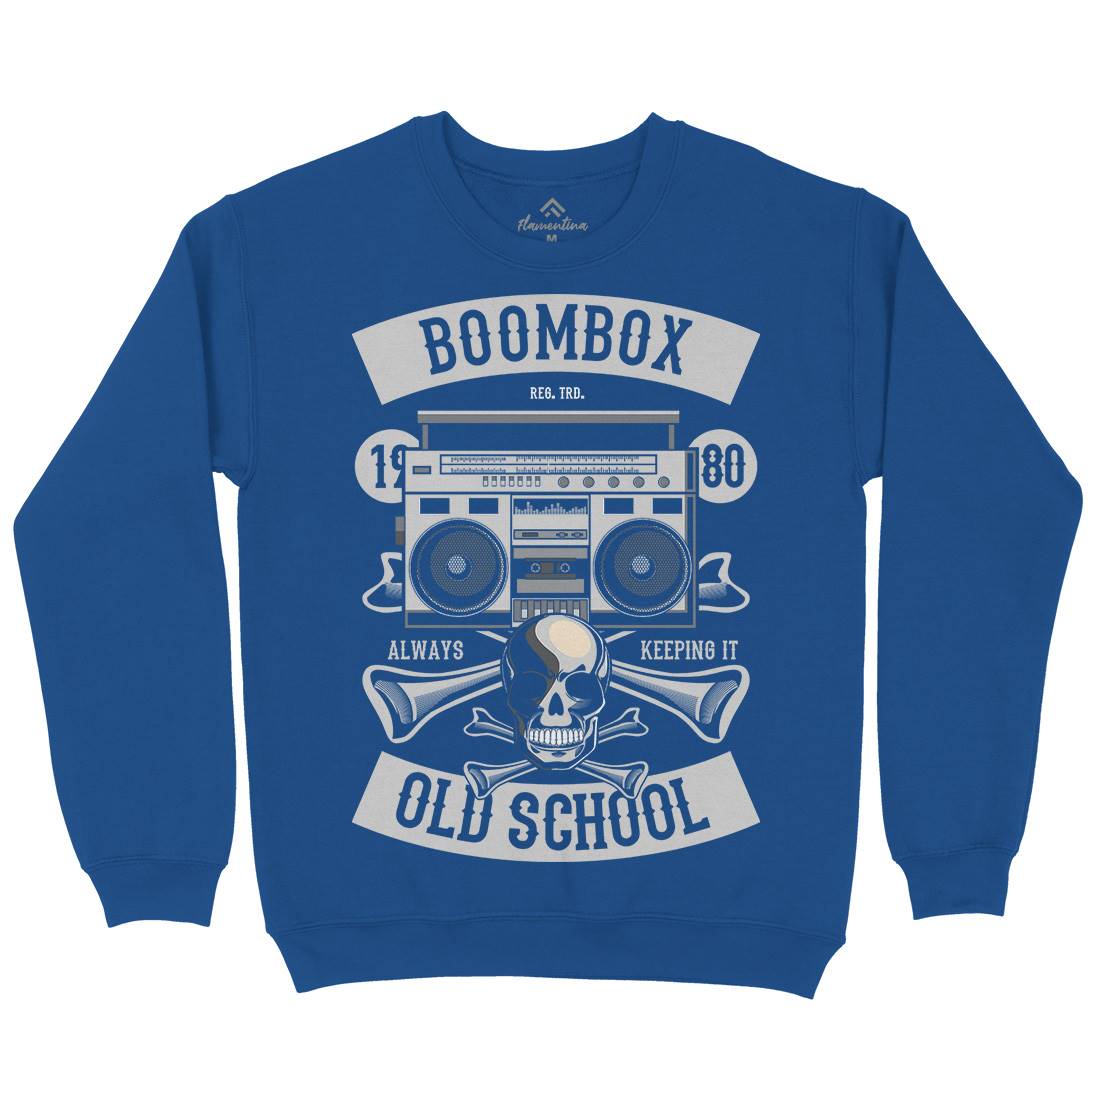 Boombox Old School Kids Crew Neck Sweatshirt Music C320